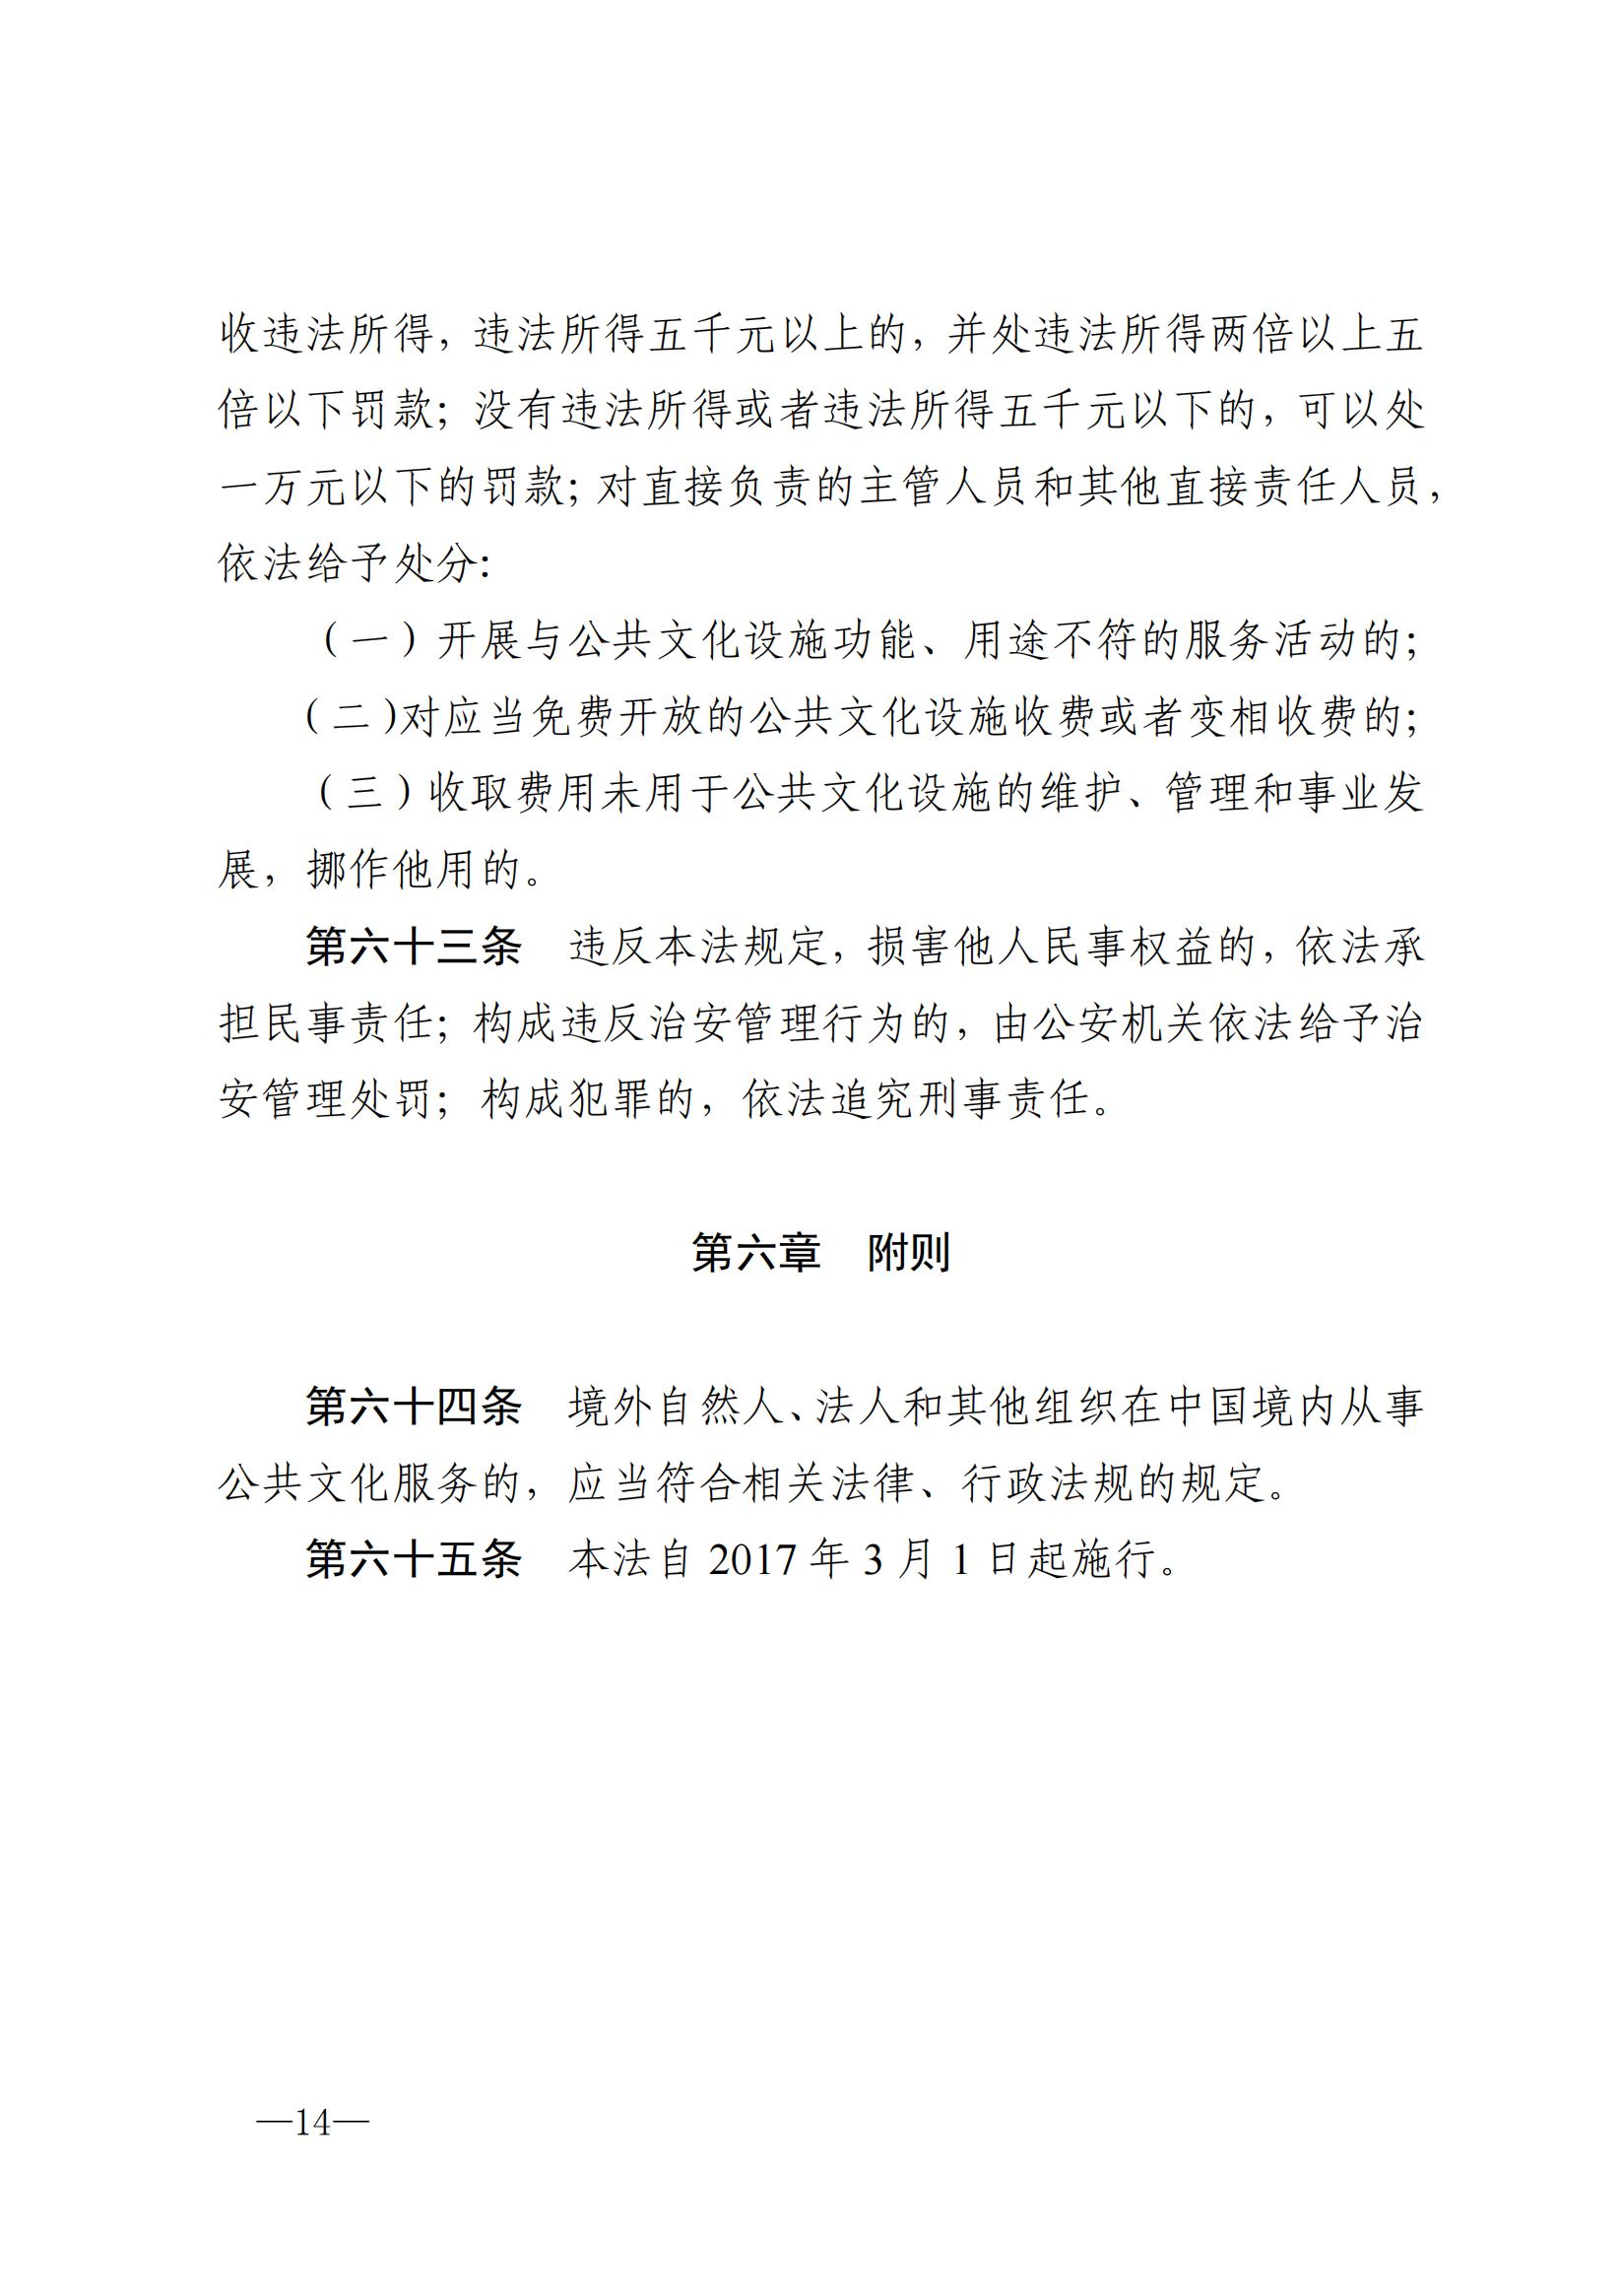 中华人民共和国公共文化服务保障法_13.jpg